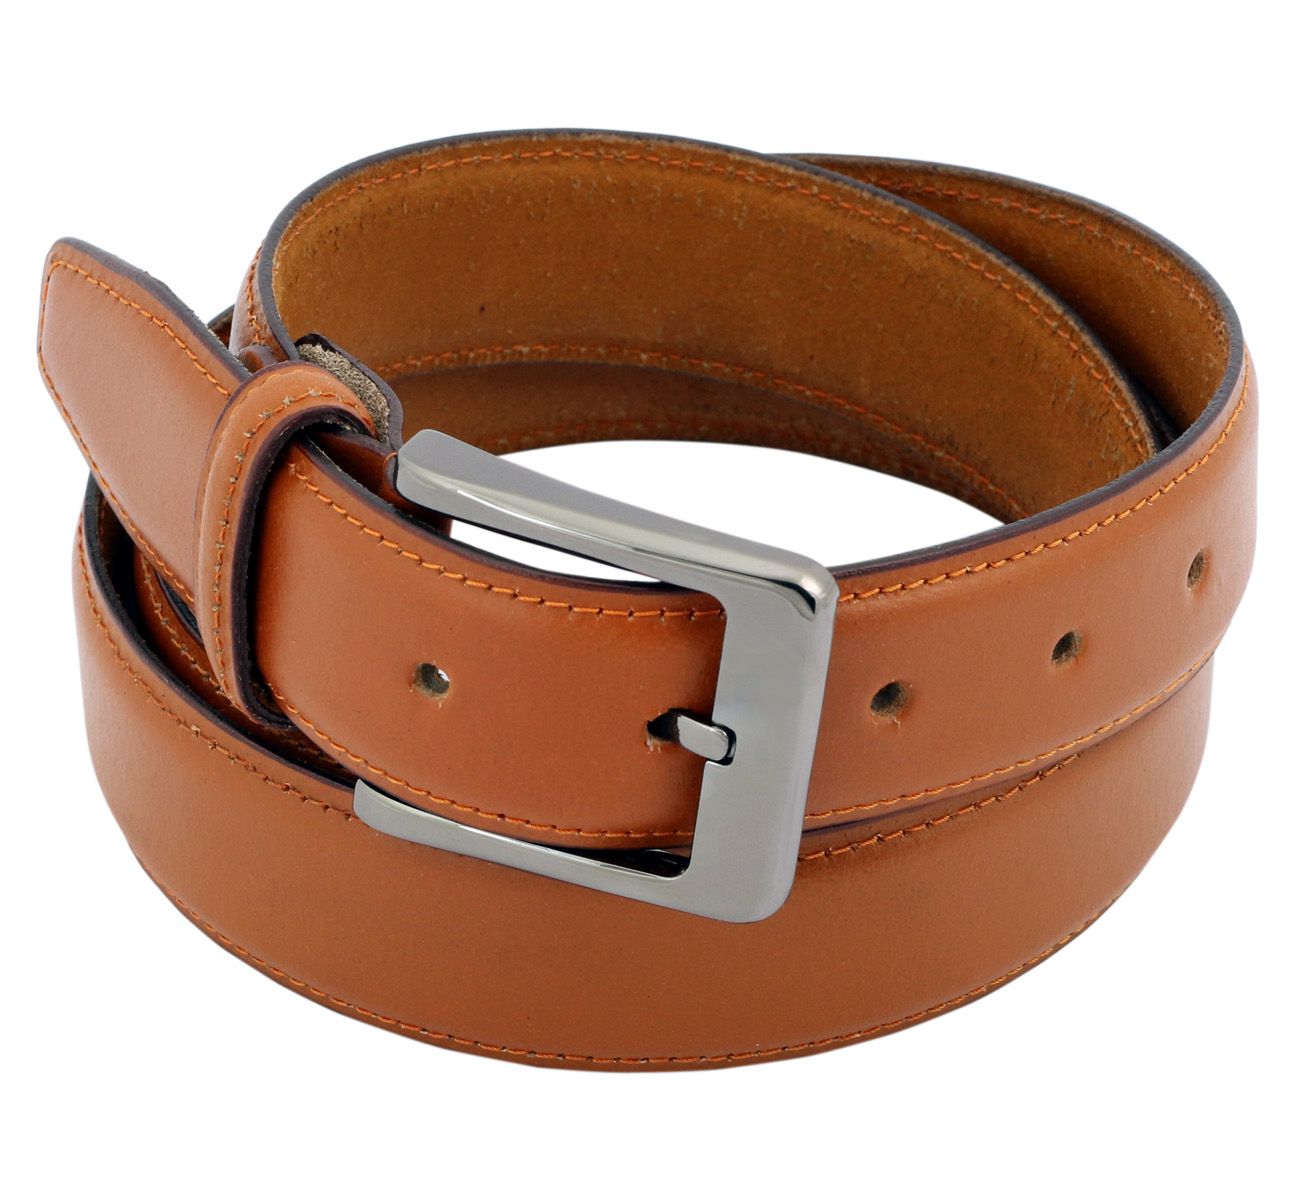 Buy LEXTAVIS Branded Brown Leather Belts for gents - both for formal ...